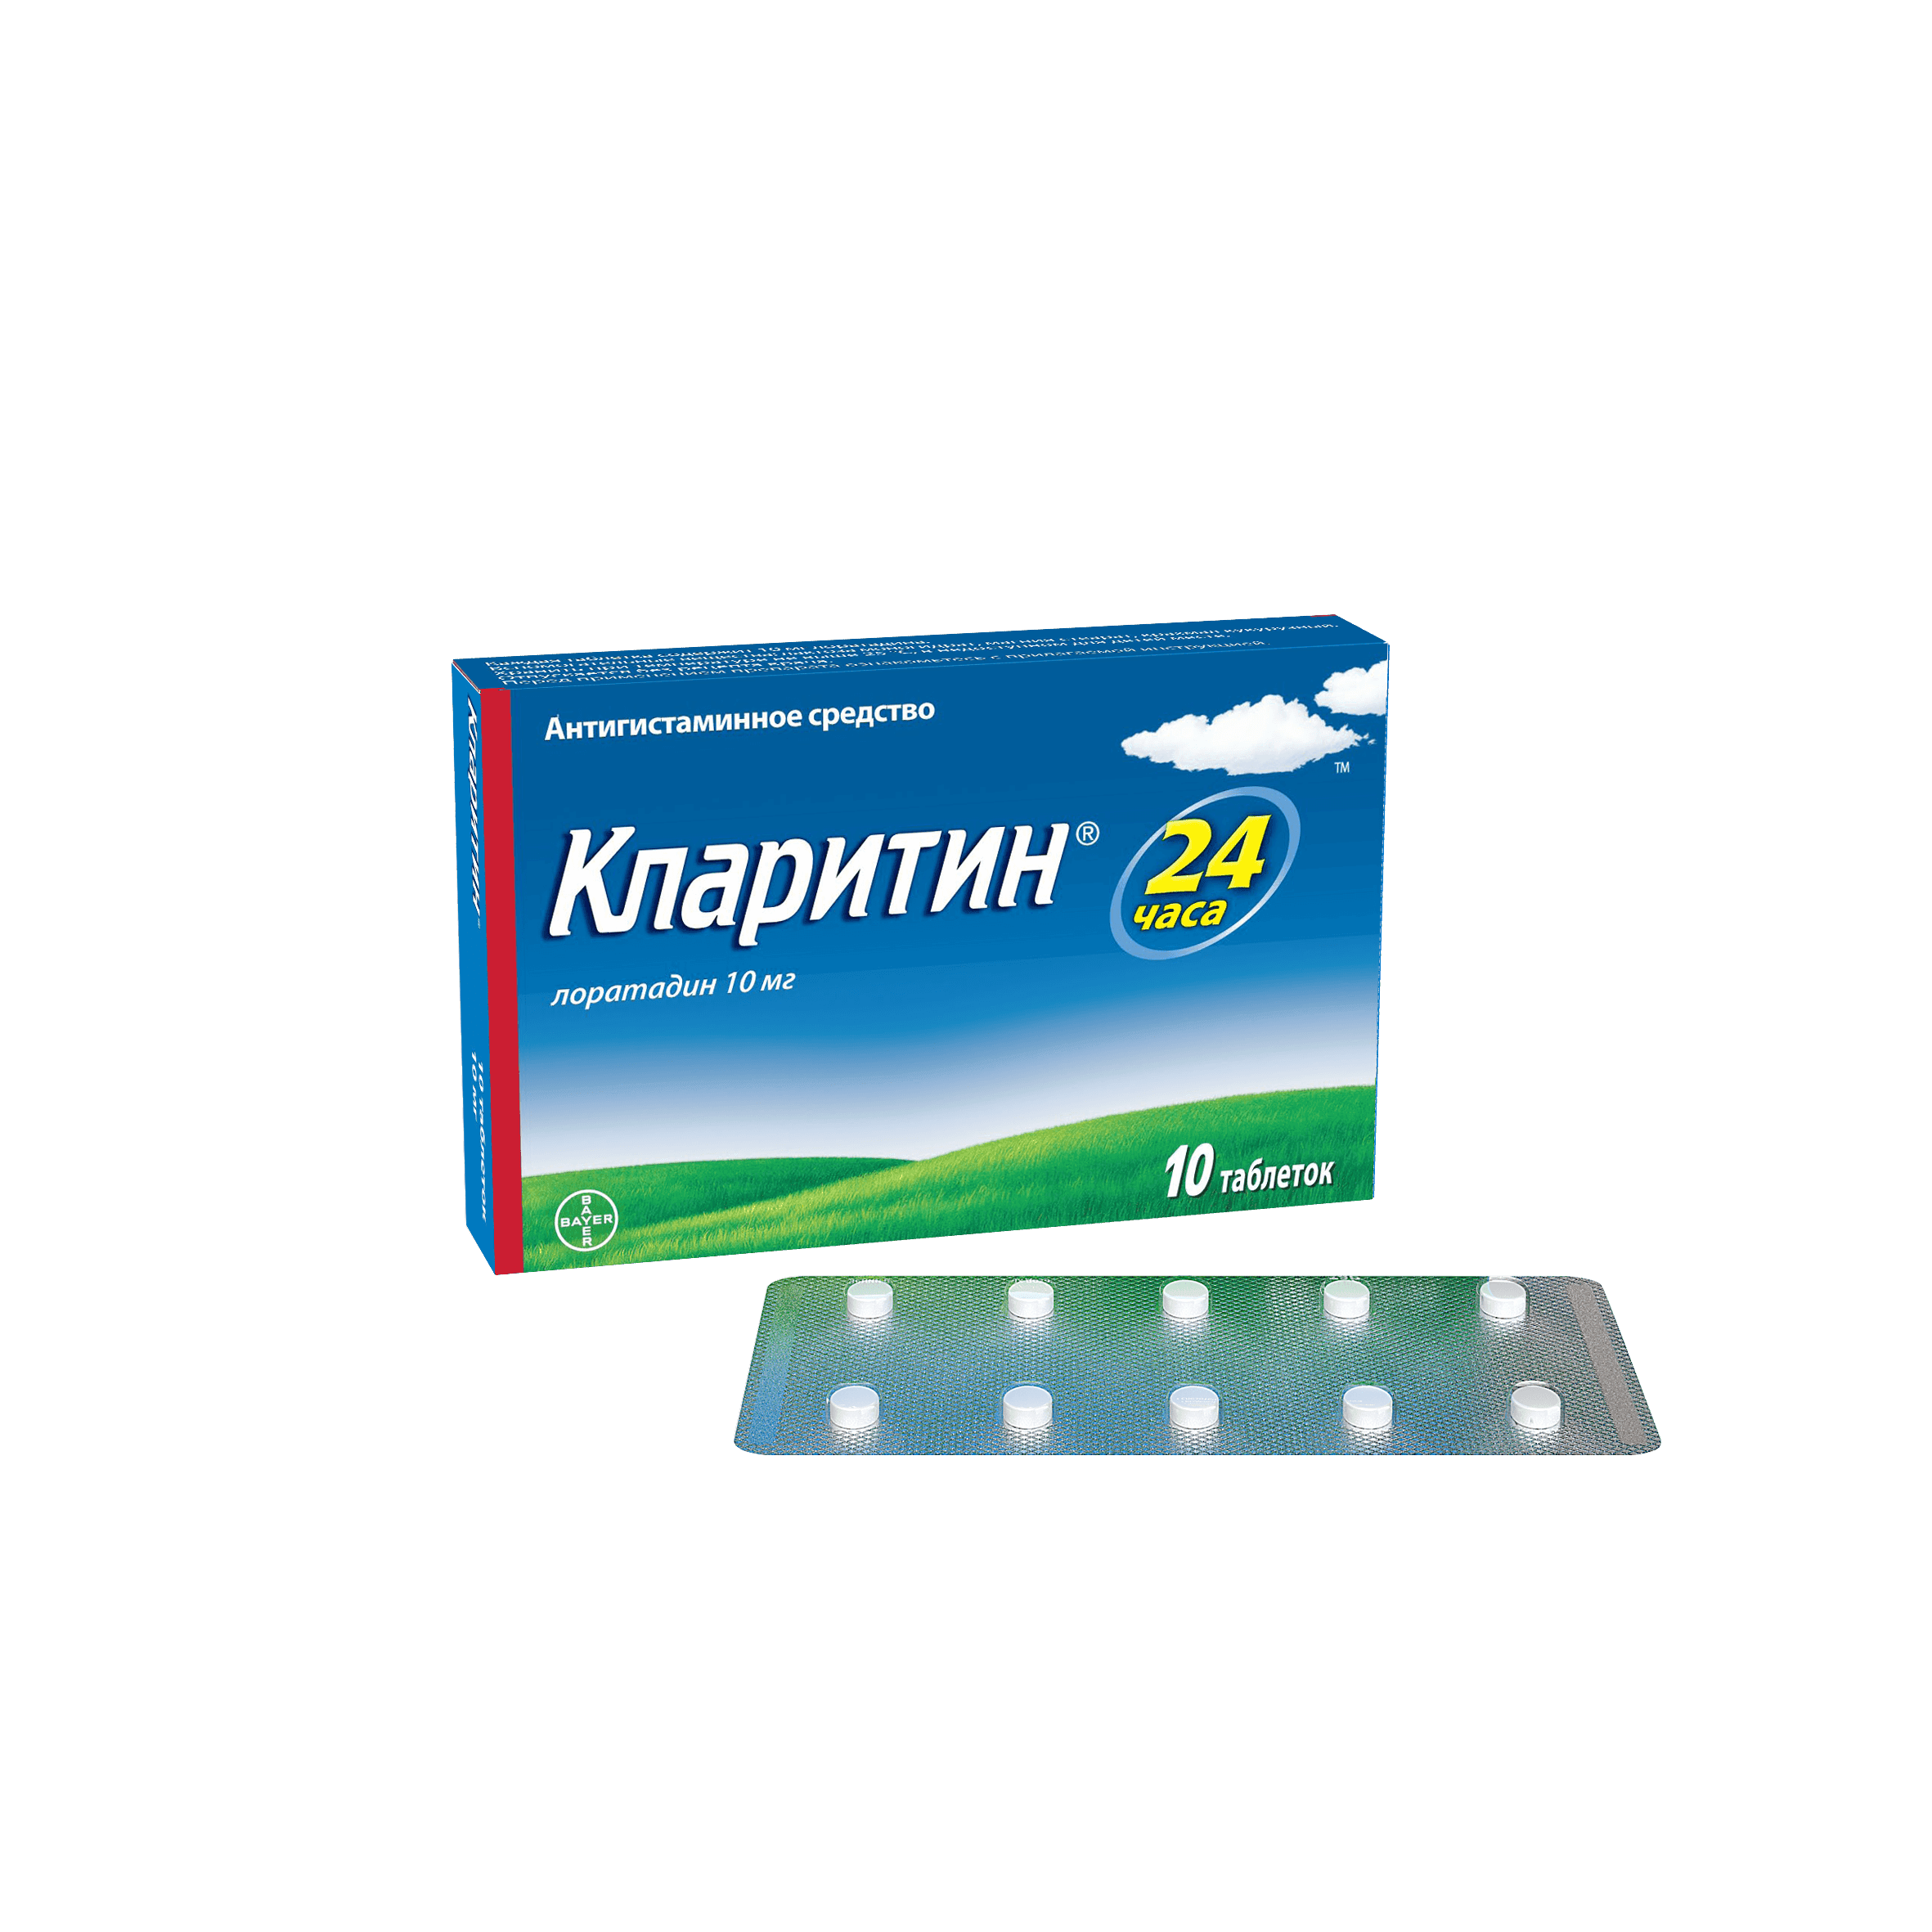 KLARITIN tabletkalari 10mg N10